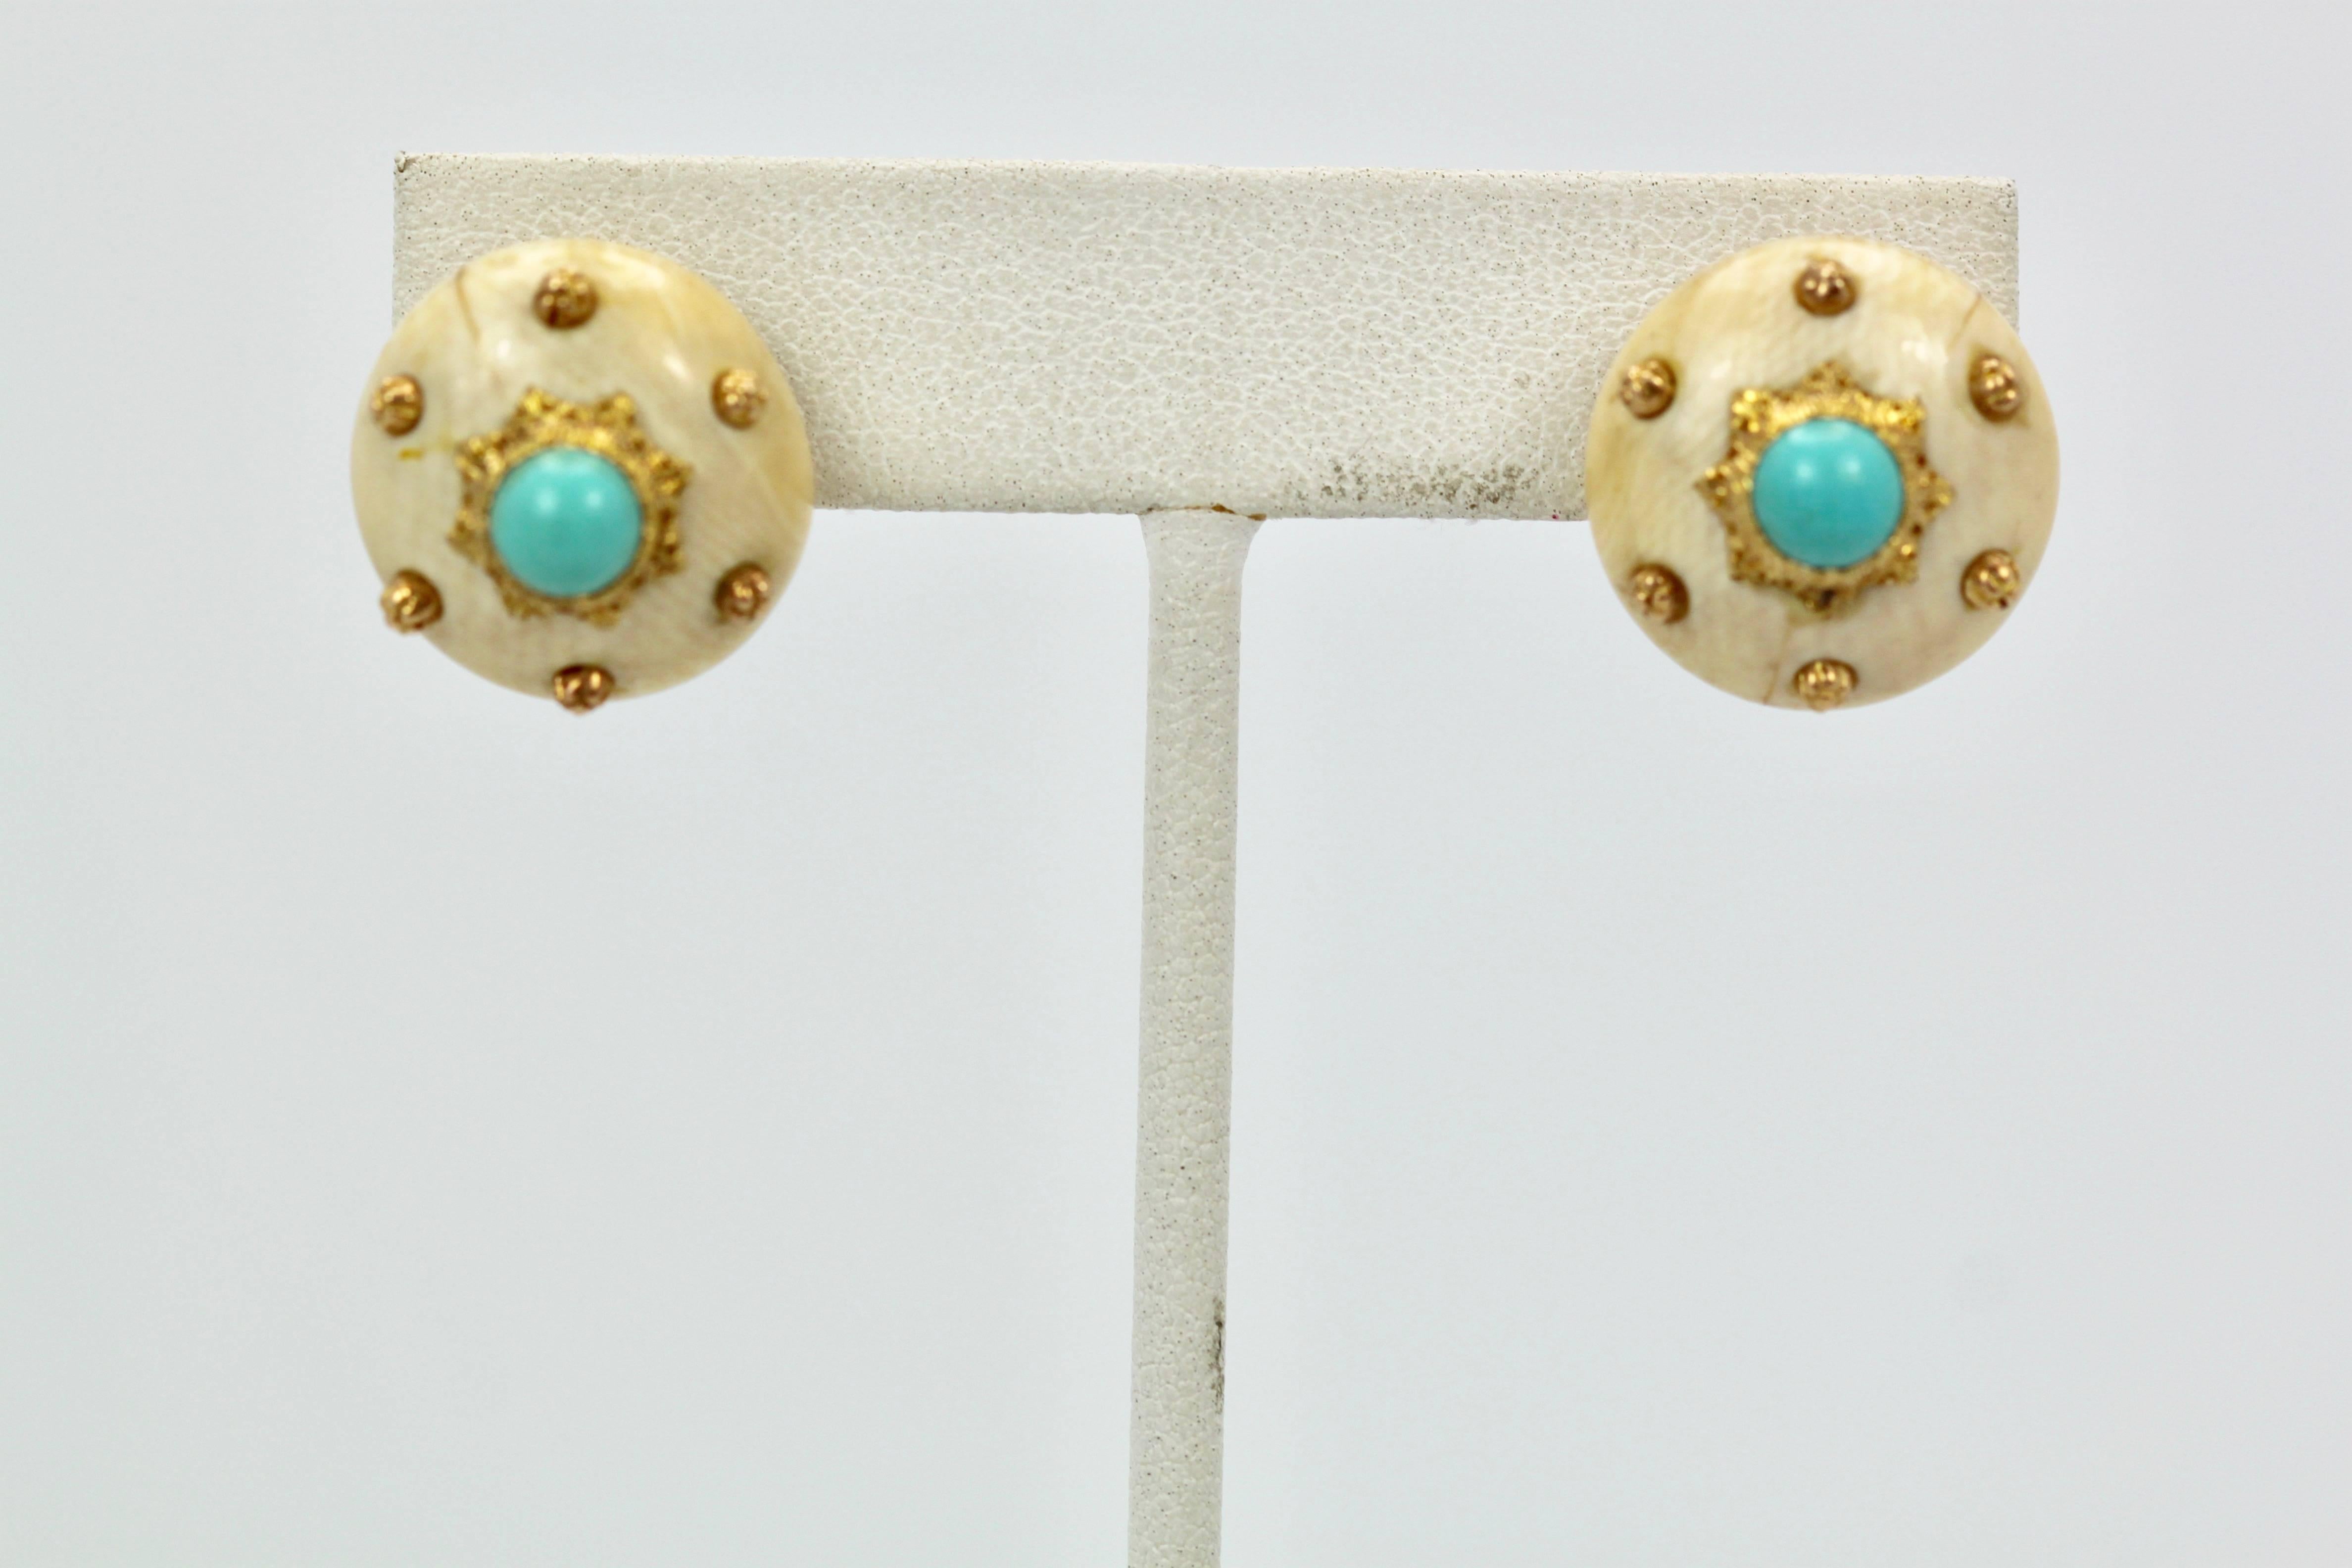 Modern Mario Buccellati 18 Karat Textured Brushed Gold Earrings Turquoise